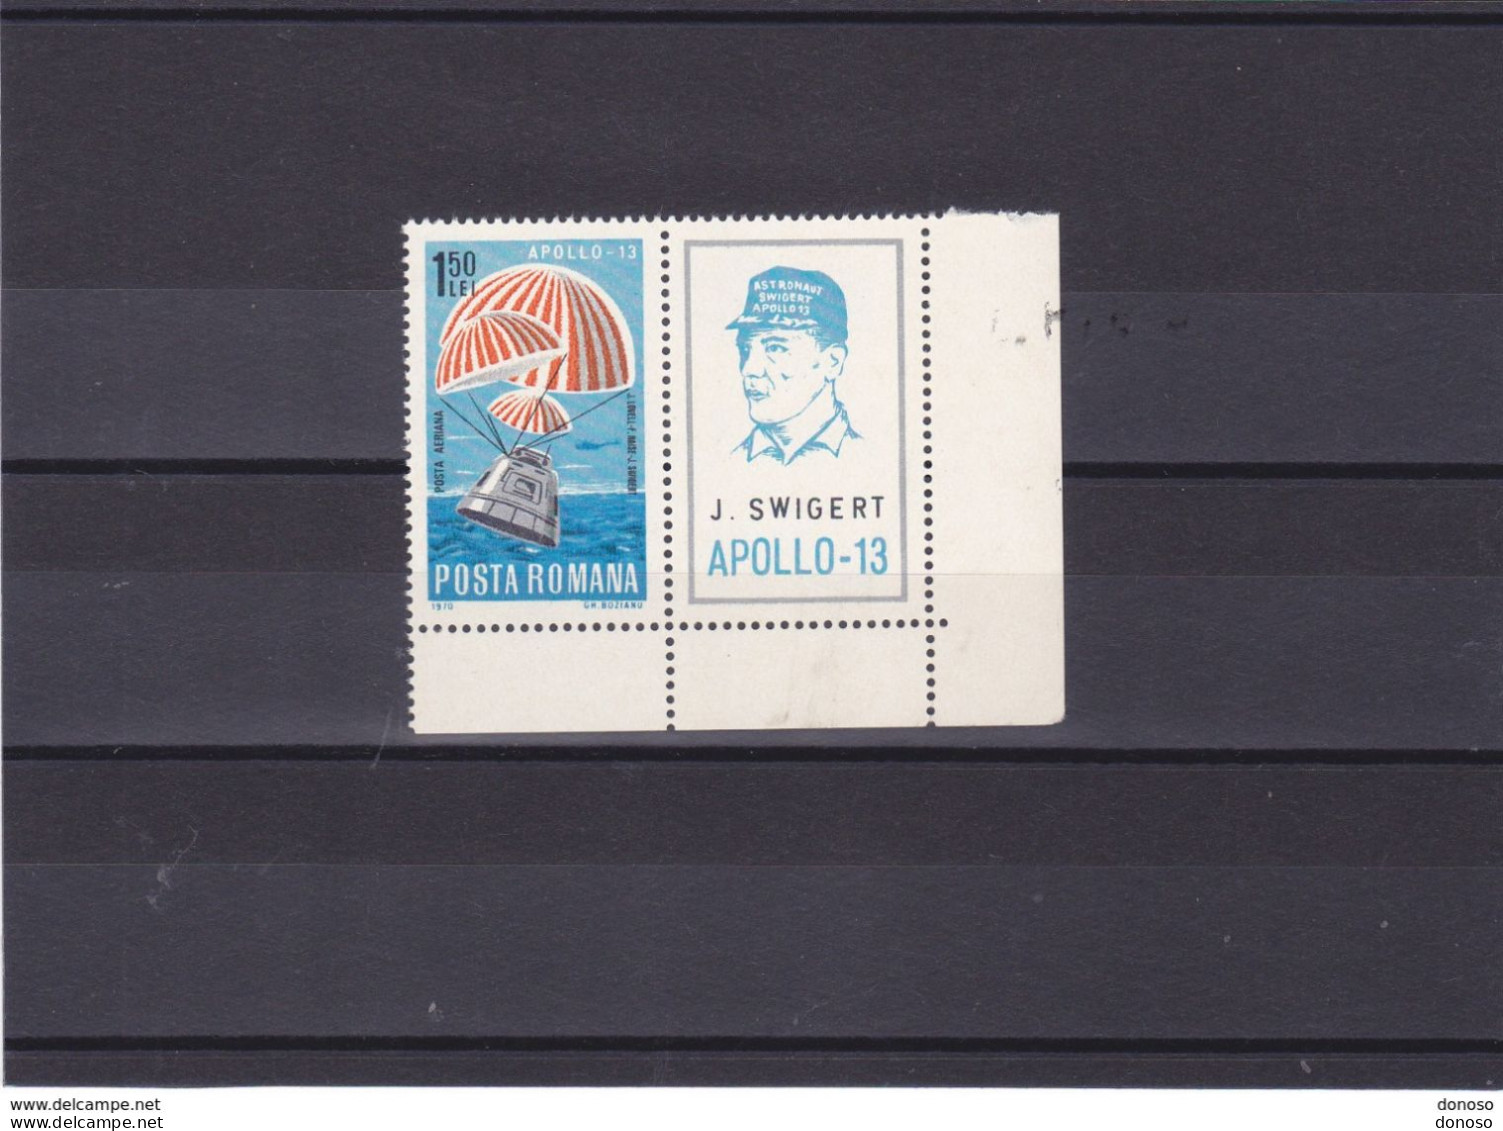 ROUMANIE 1970 APOLLO 13 Yvert PA 226, Michel 2863 NEUF** MNH - Unused Stamps